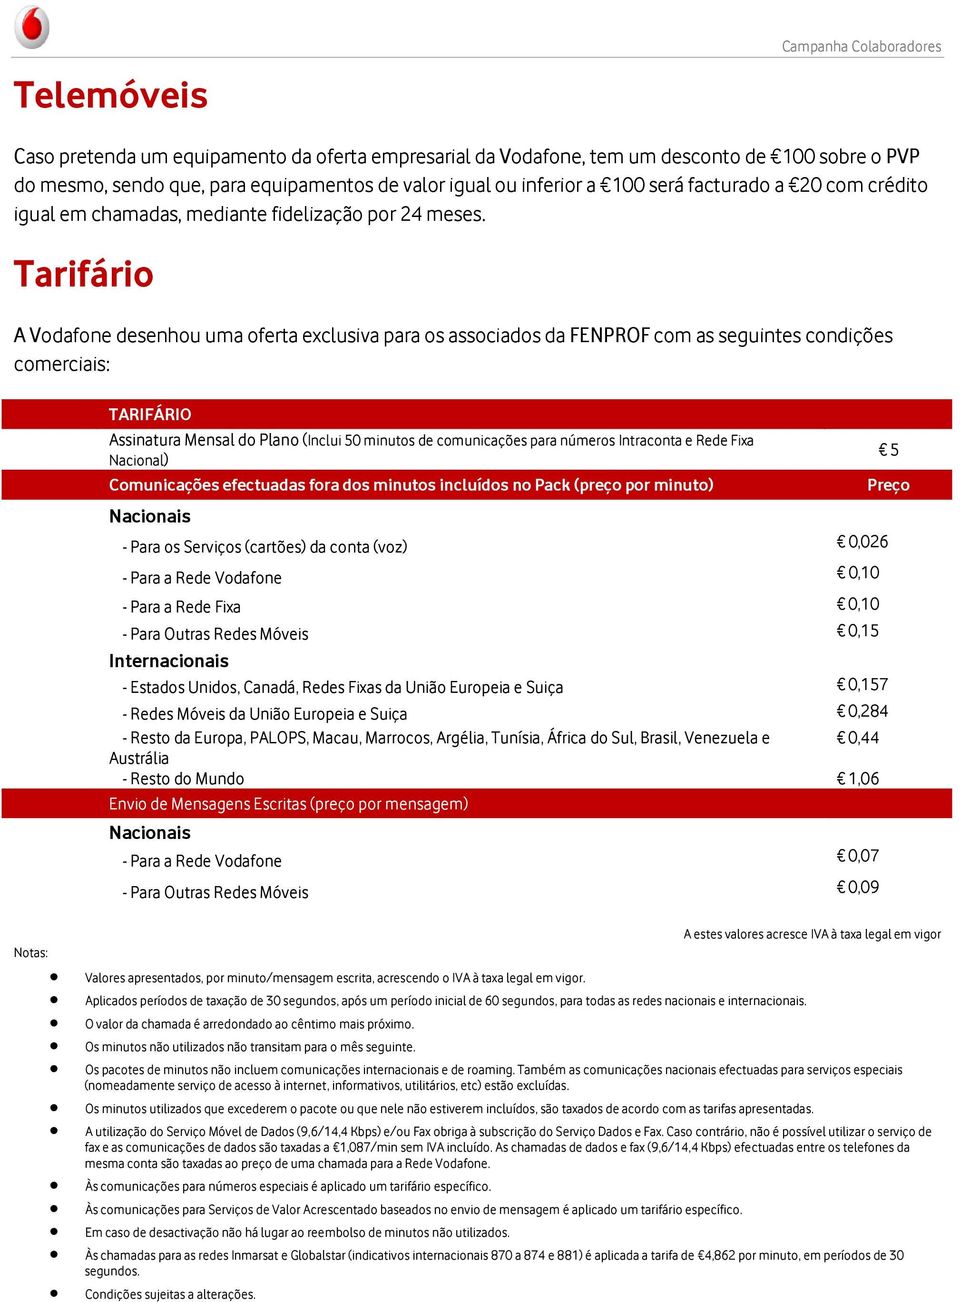 A Vodafone desenhou uma oferta exclusiva para os associados da FENPROF com as seguintes condições comerciais: TARIFÁRIO Assinatura Mensal do Plano (Inclui 50 minutos de comunicações para números